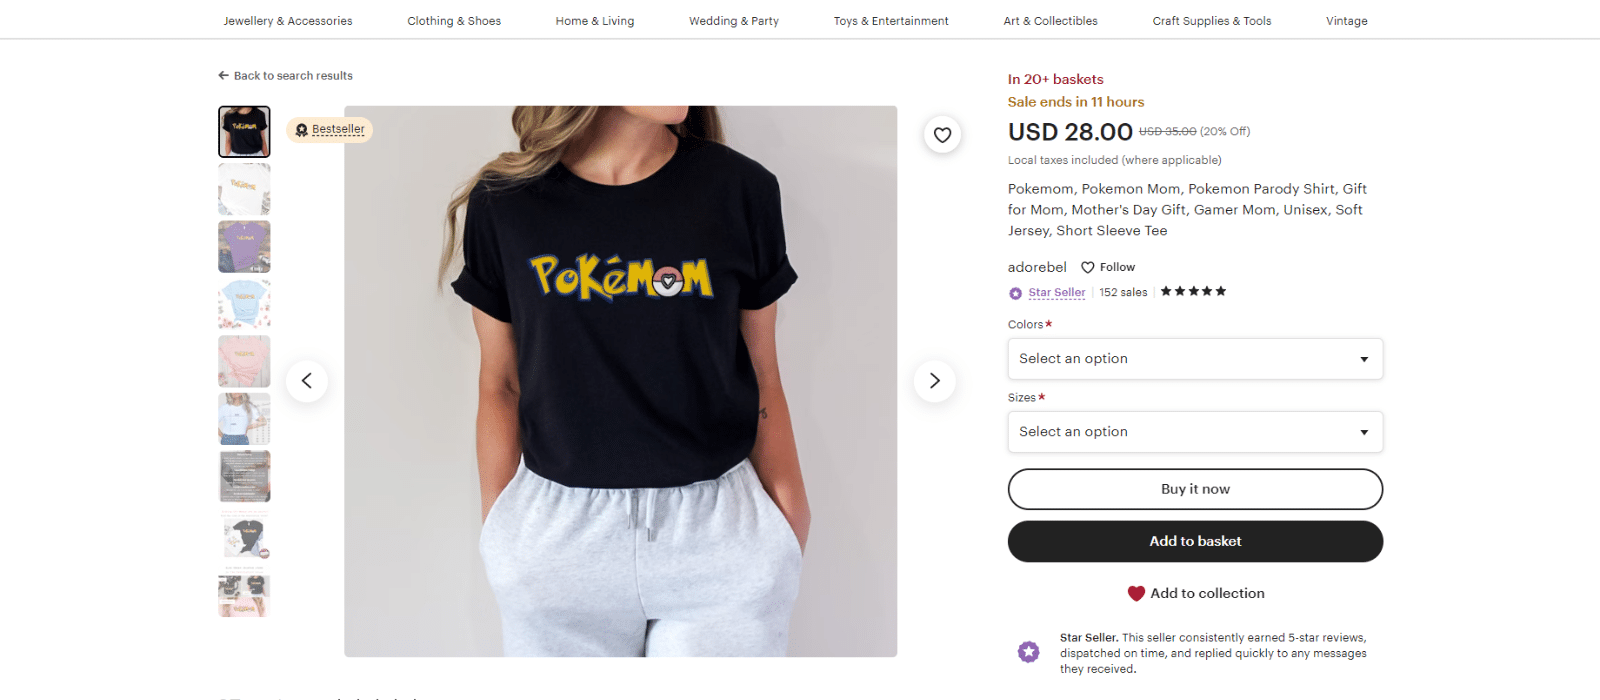 Pokémon shirt